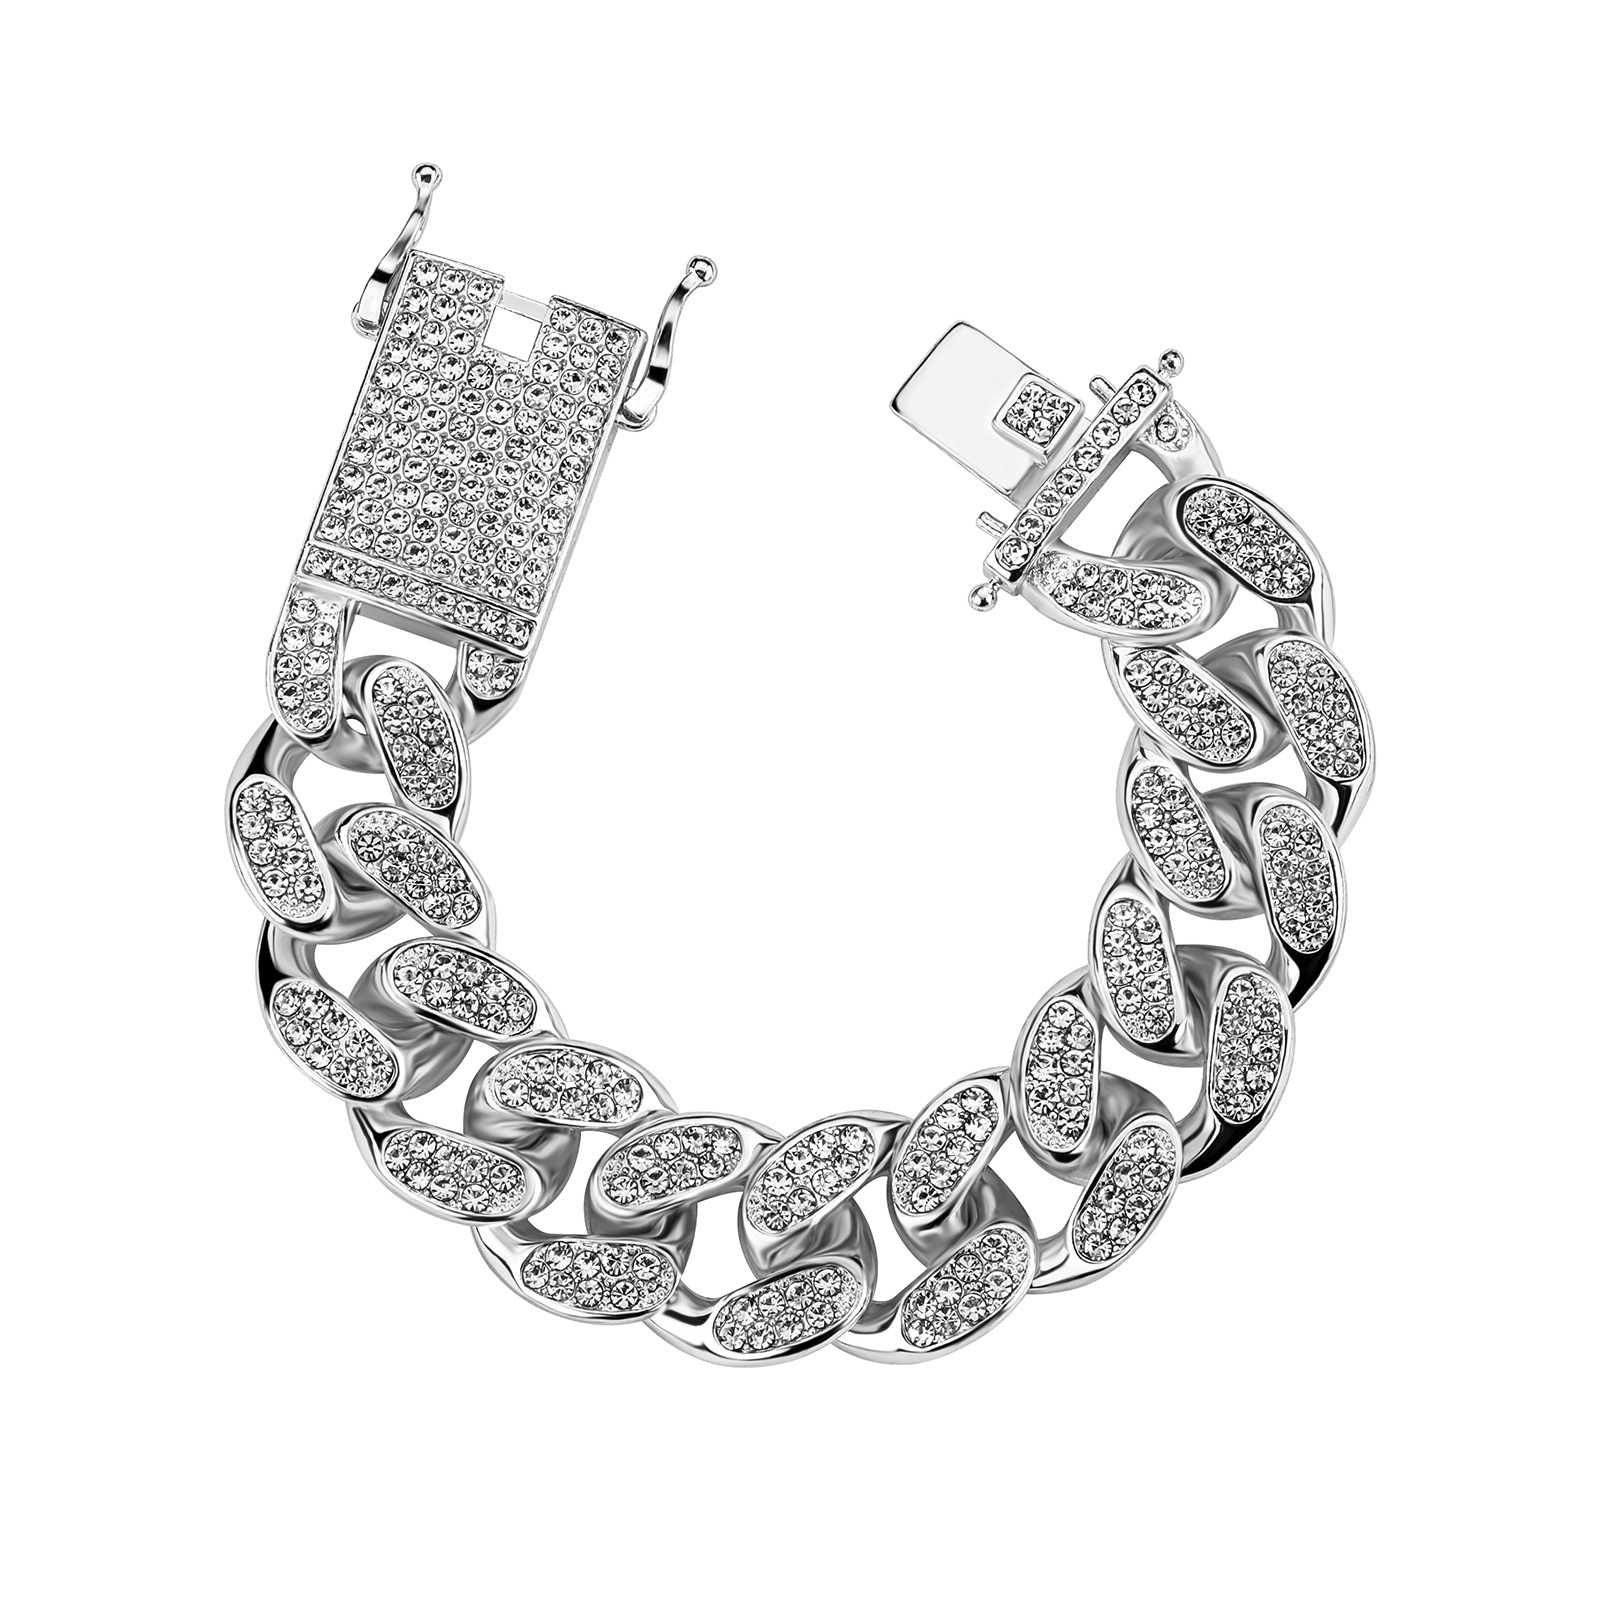 14:Bracelet silver 8 inch